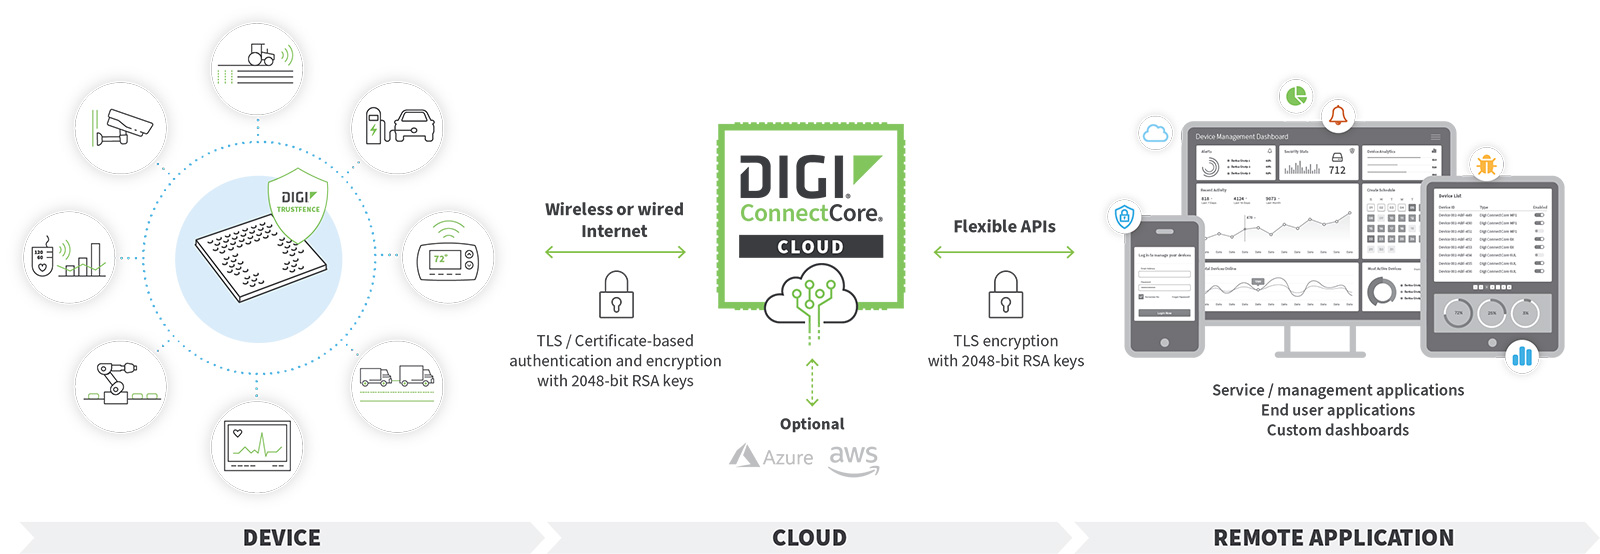 digi-connectcore-servicios-en-nube-diagrama-a8.jpg